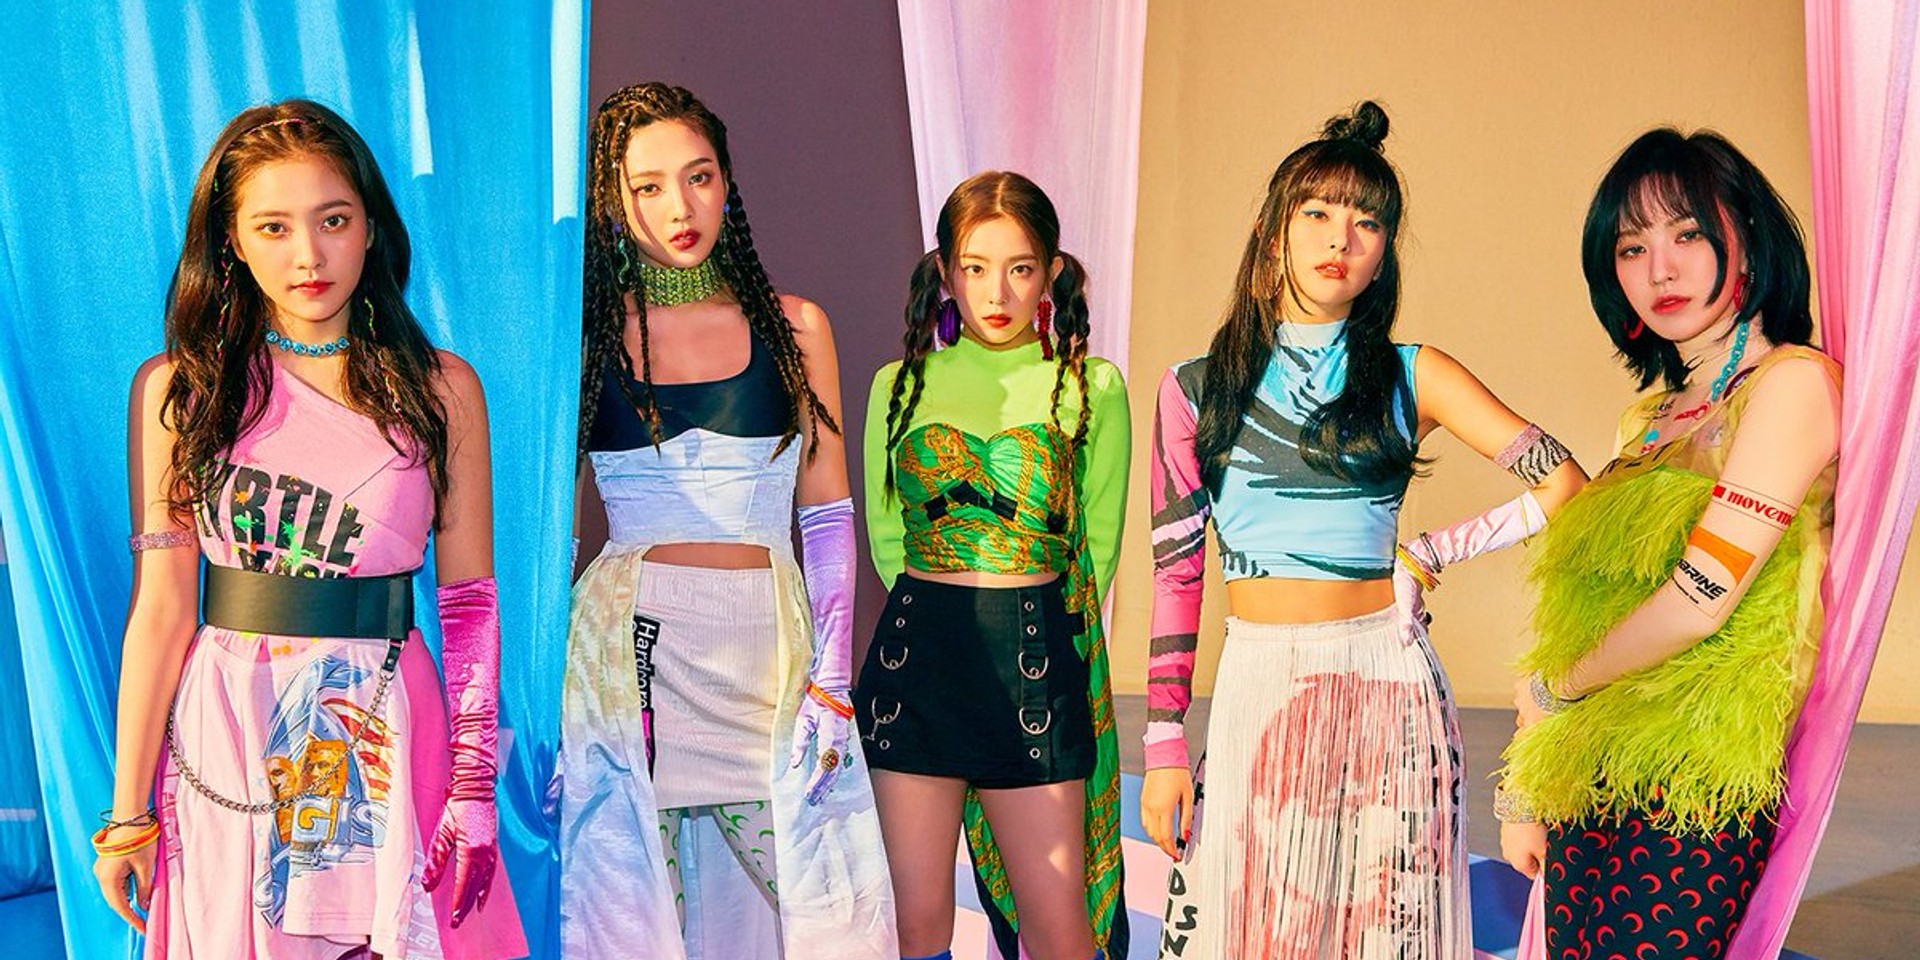 Red Velvet releases music video for ‘Umpah Umpah’ alongside ‘The ReVe Festival’ Day 2 EP – watch